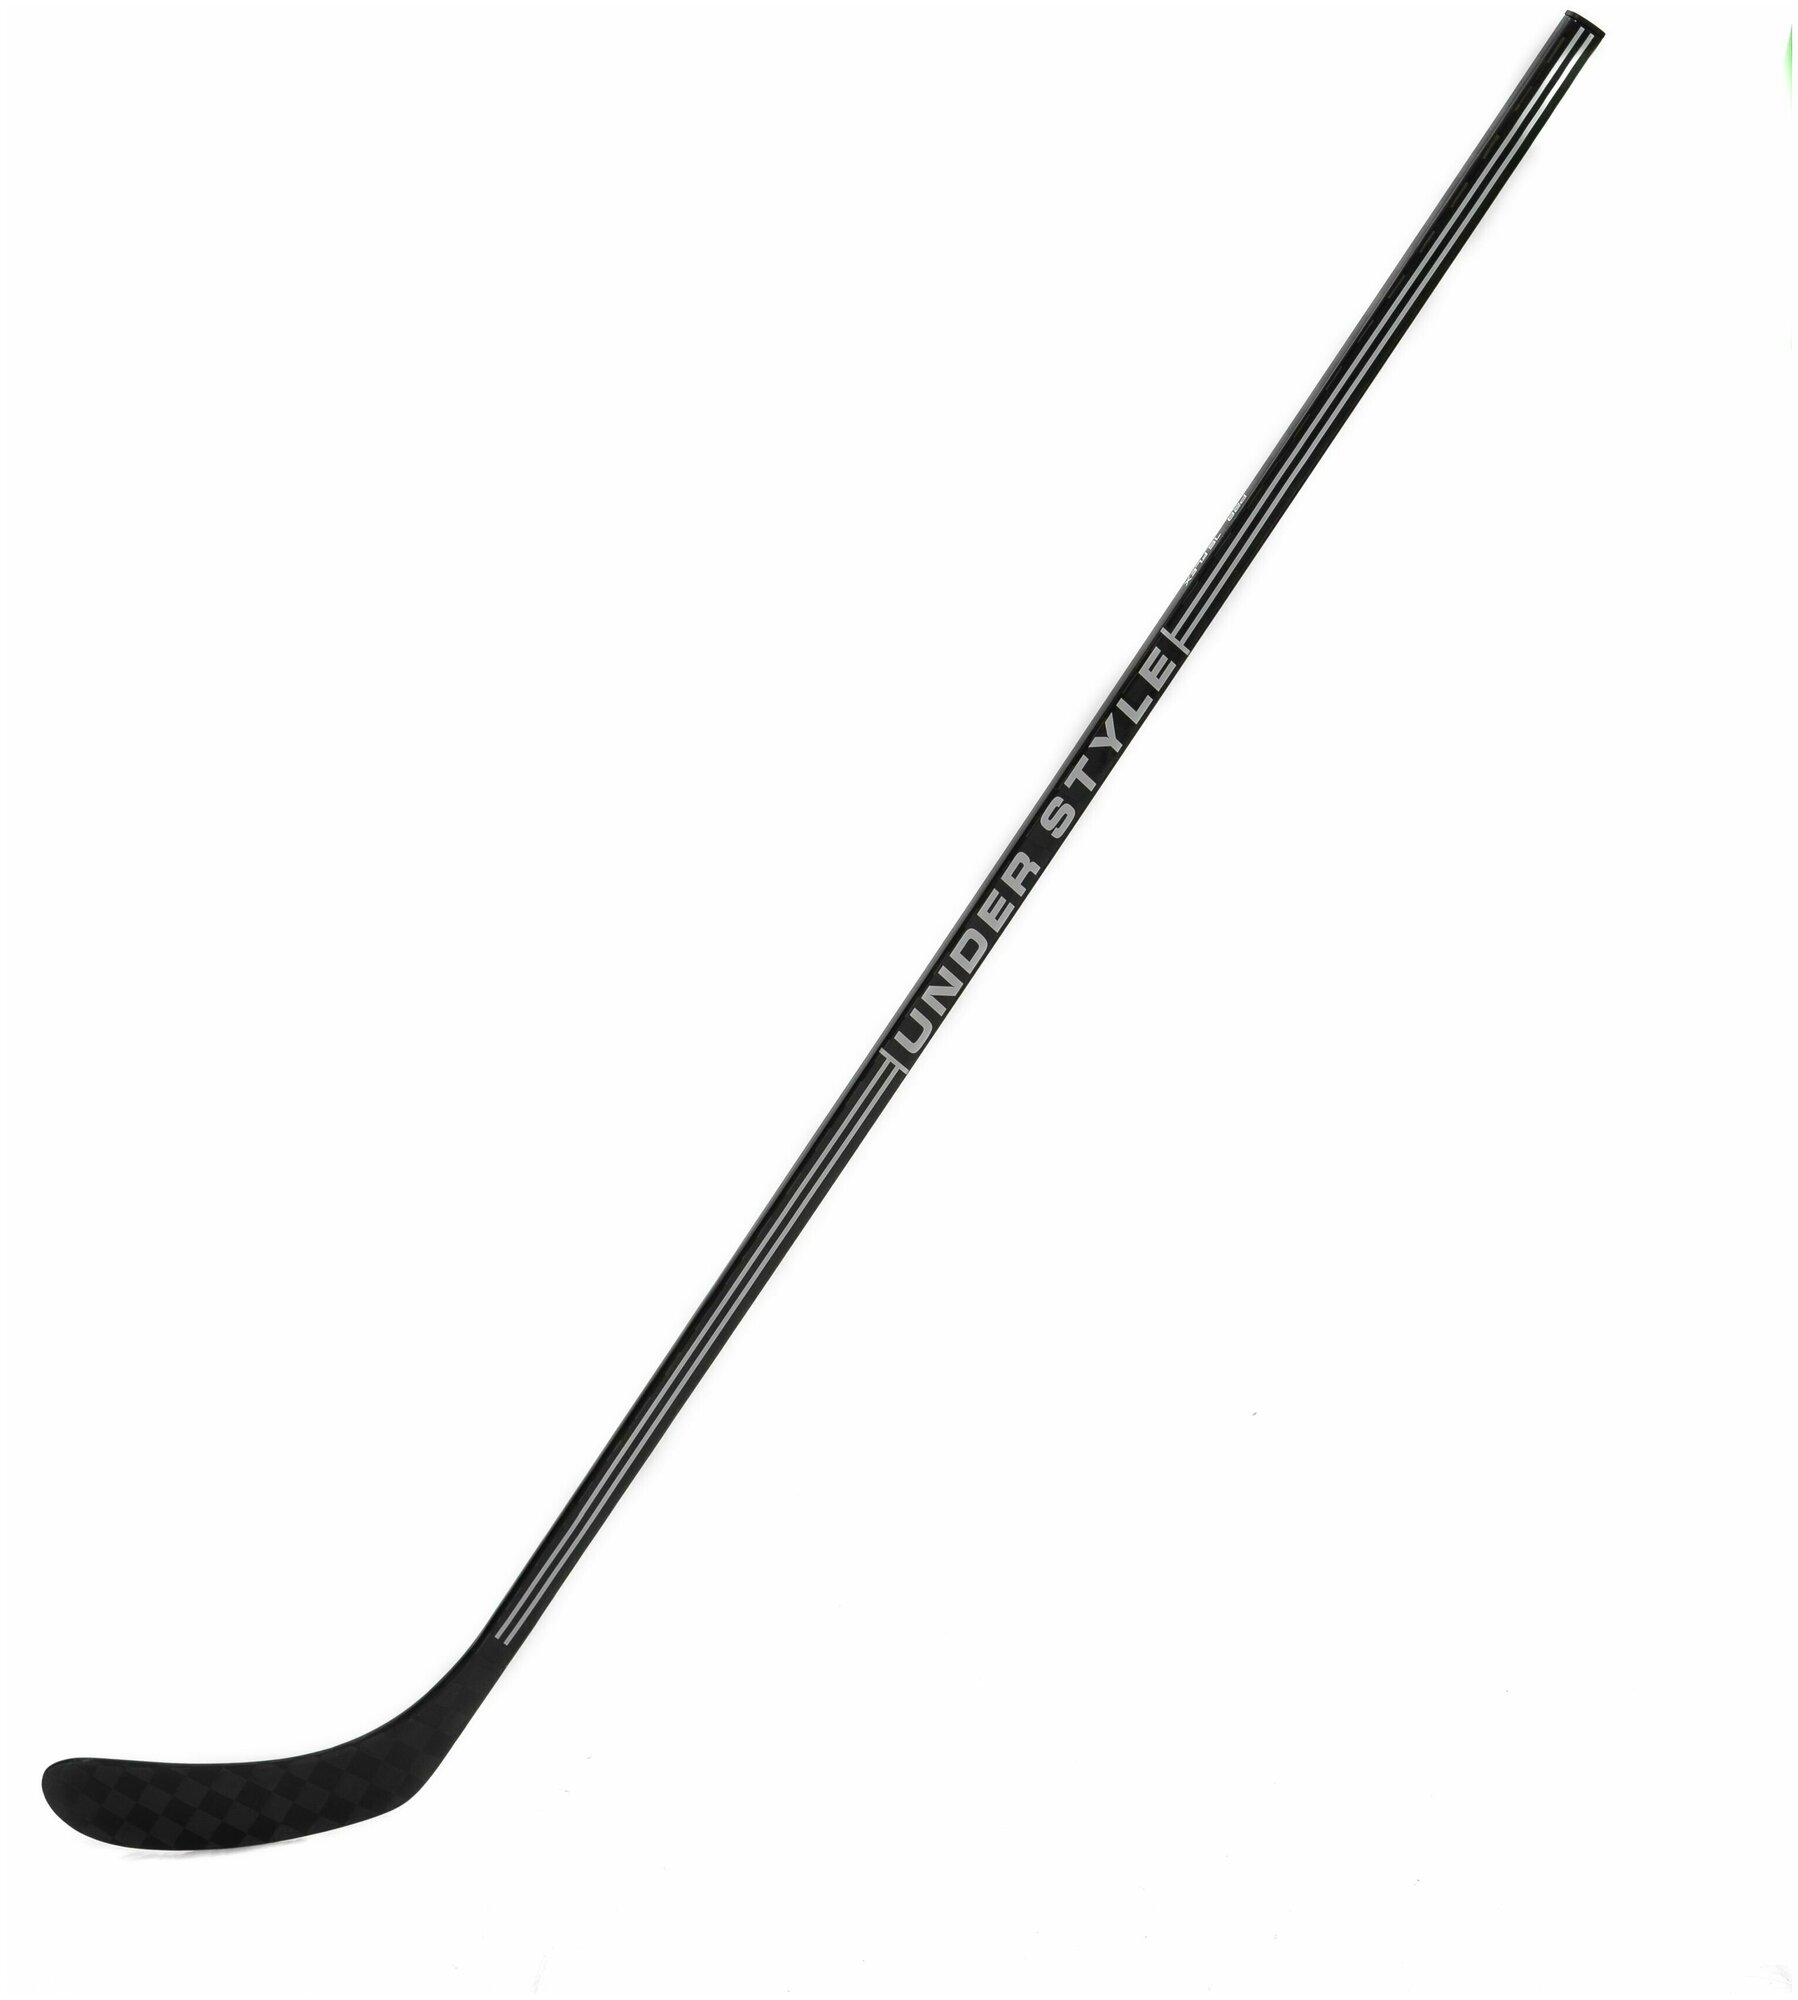 Хоккейная клюшка UNDER STYLE PRO Grip SR, Flex 85, P92, Правый хват